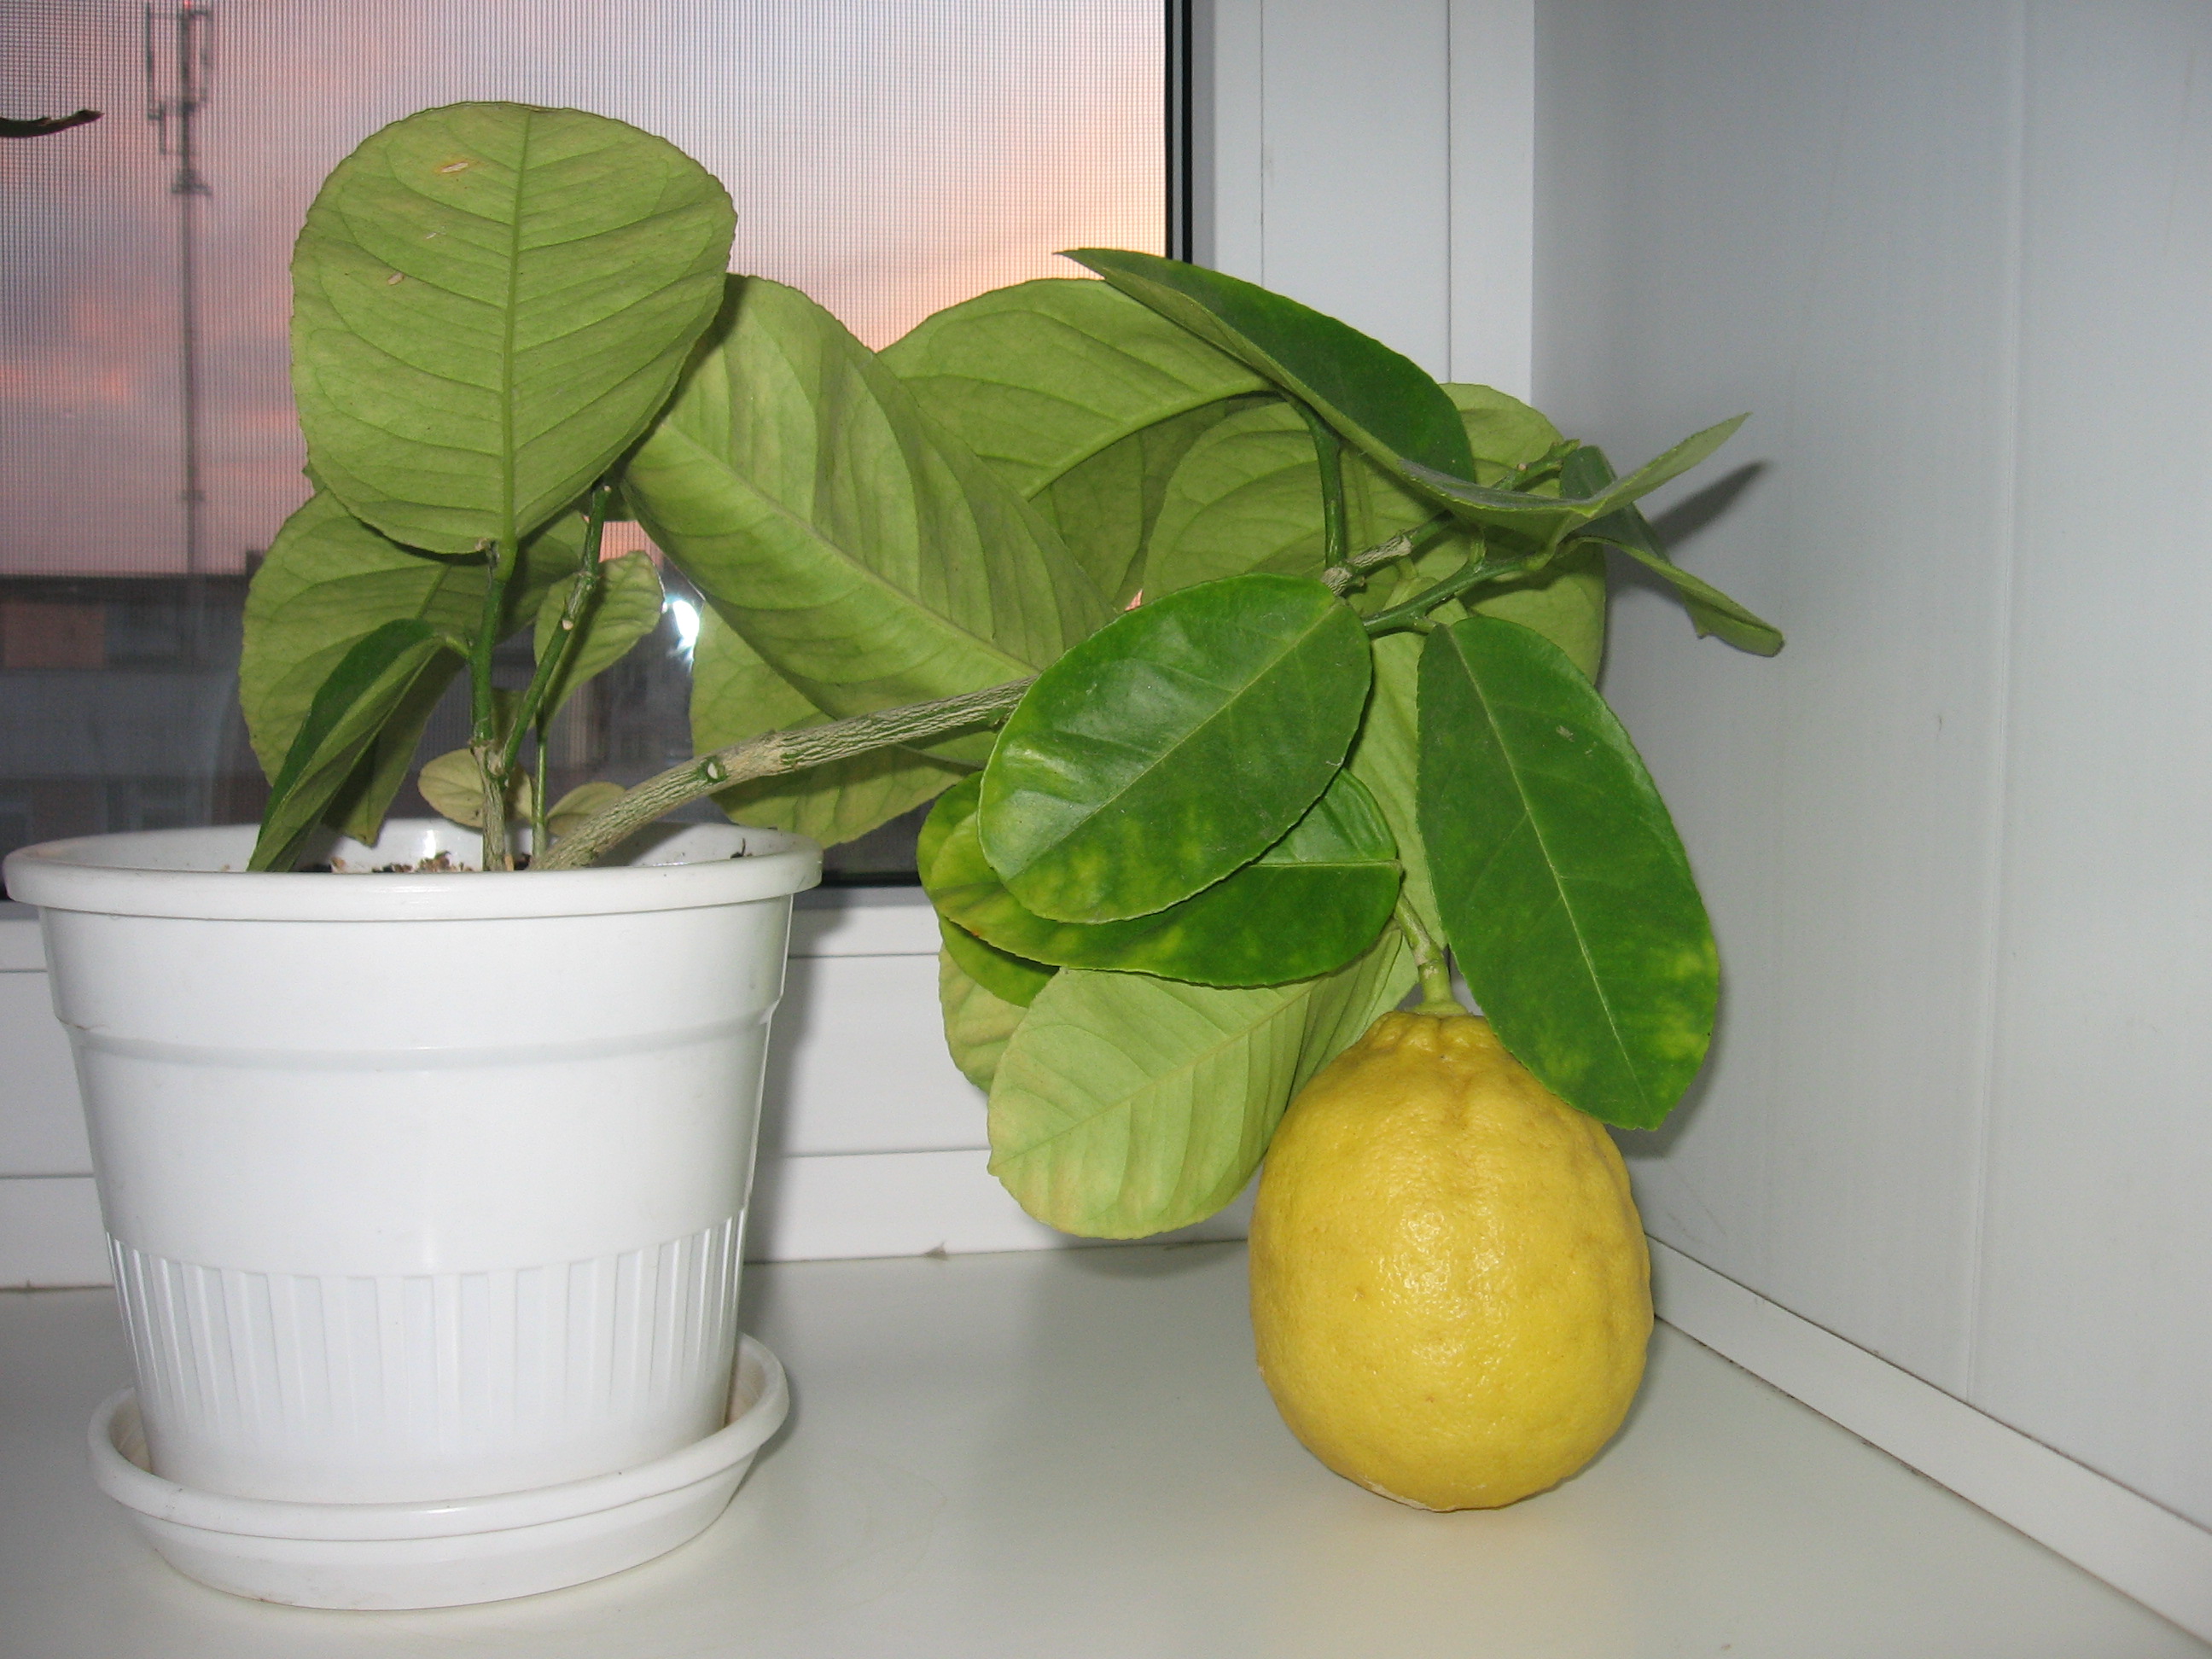 Как вырастить лимон из косточки в домашних условиях, будет ли он плодоносить, сколько времени займет процесс. уход за деревцем